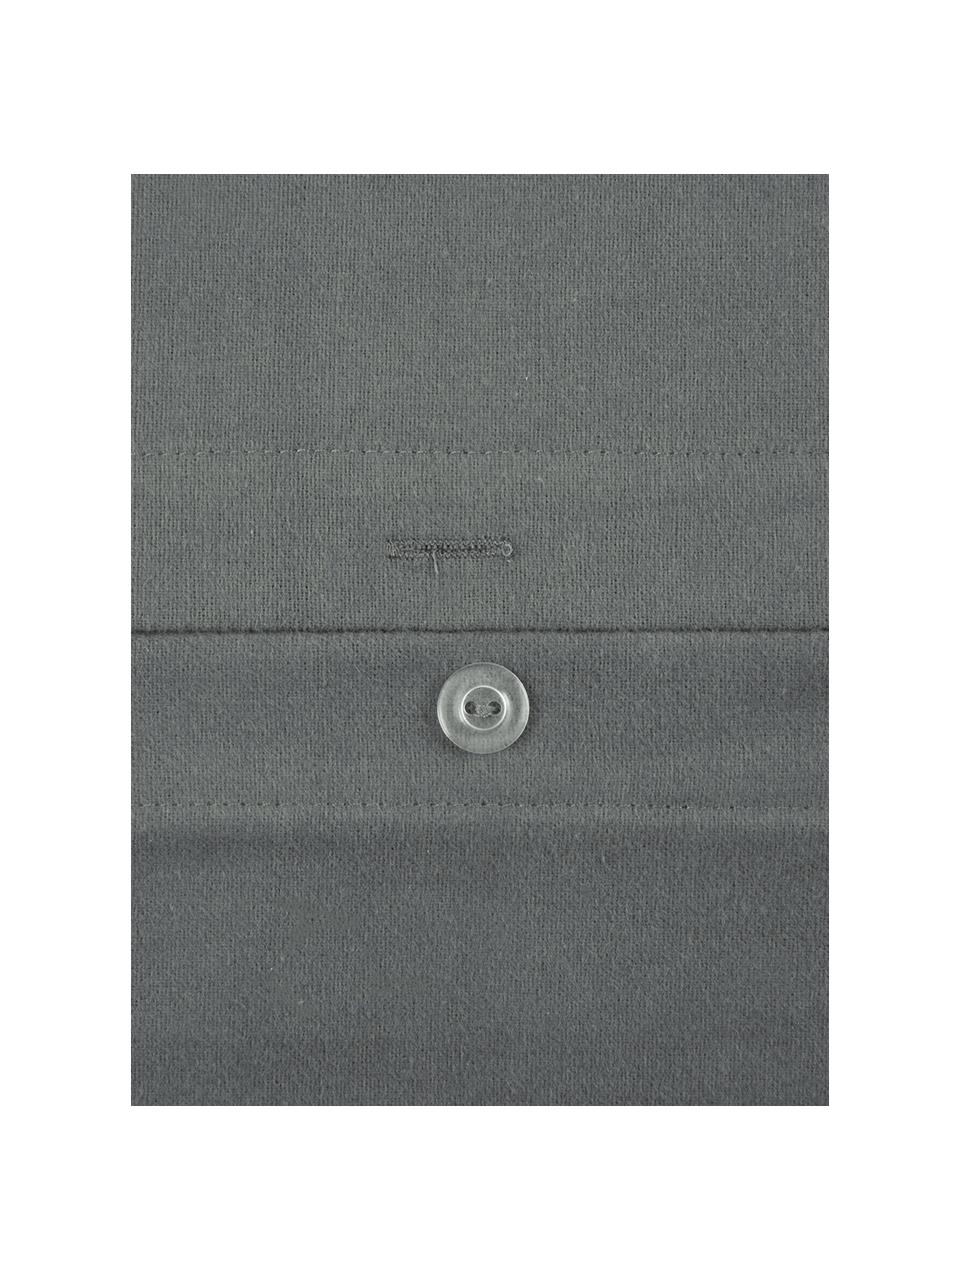 Flanell-Bettwäsche Biba in Grau, Webart: Flanell Flanell ist ein k, Grau, 135 x 200 cm + 1 Kissen 80 x 80 cm